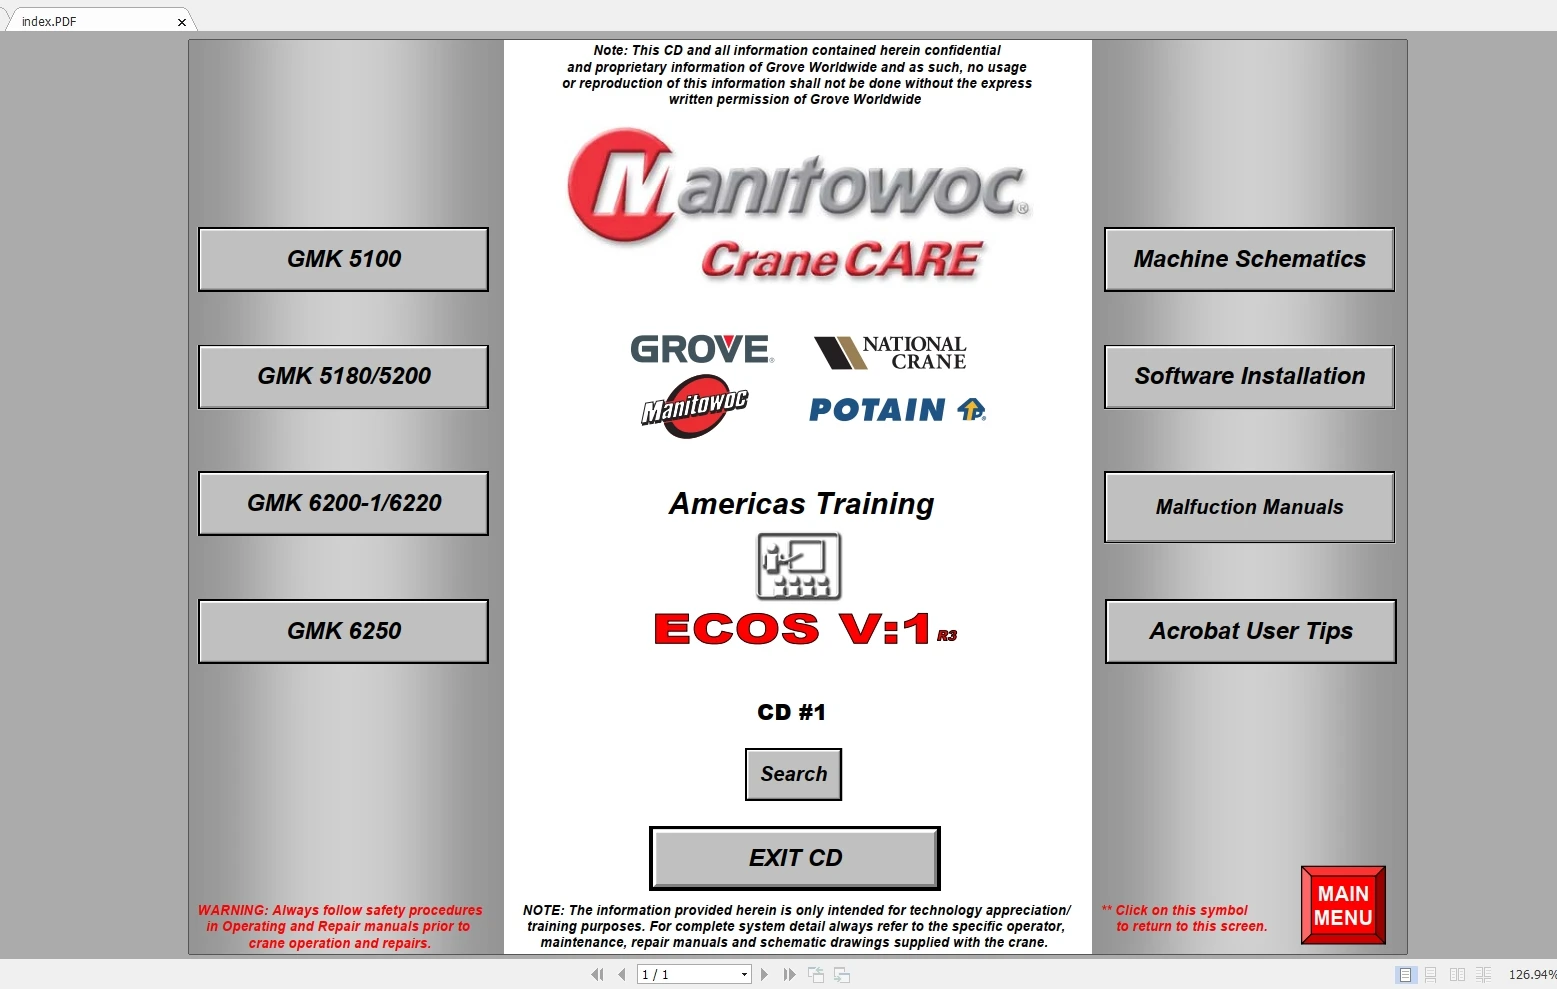 

DVD-проигрыватель для захвата крана в стиле Гров манитовуд ECOS V1 V2 V4